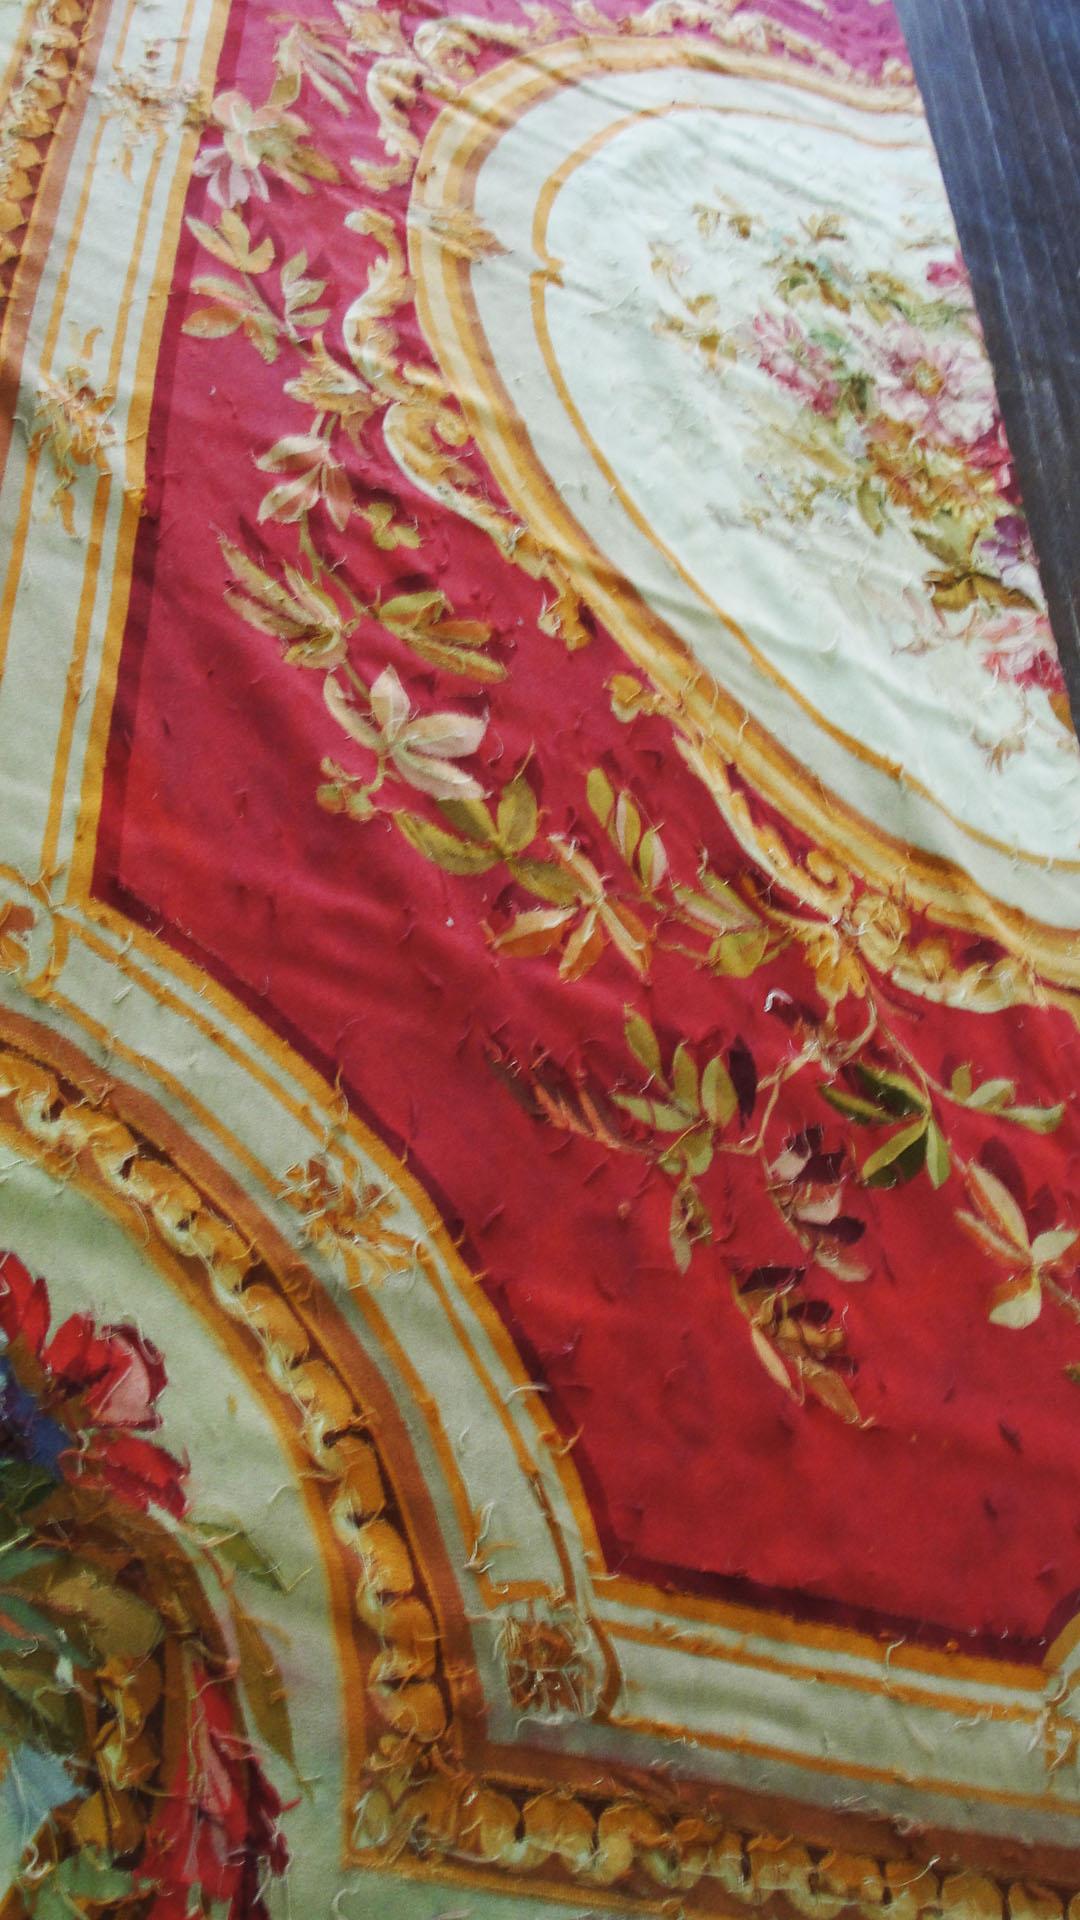 Antiker französischer Aubusson-Teppich, einer der schönsten Wandteppiche, 19. Jahrhundert in ausgezeichnetem Zustand.
Erworben aus dem Nachlass der Sammlung von Richard und Diane Fisher und angeblich aus dem Nachlass von Jenny Lind.
Jenny Lind